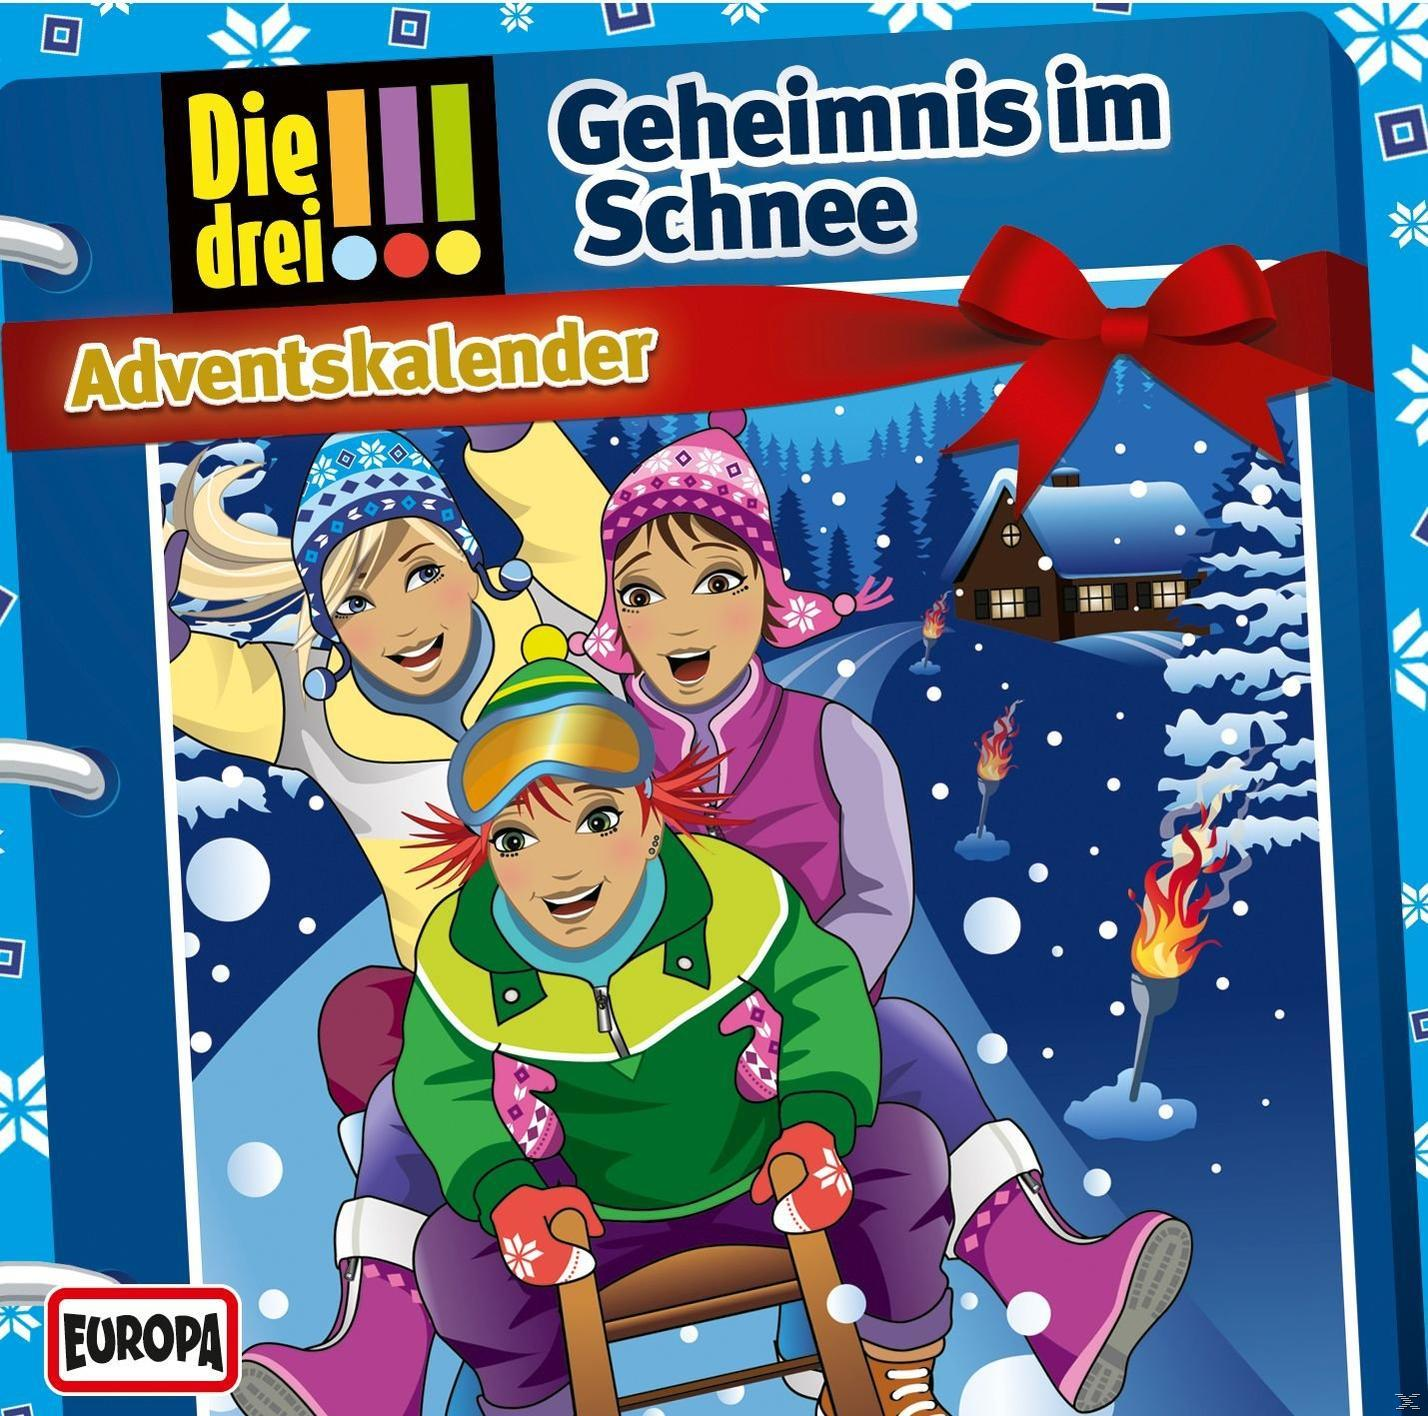 Die !!! Die Drei drei 2015: - Schnee im (CD) ??? - - Adventskalender Geheimnis